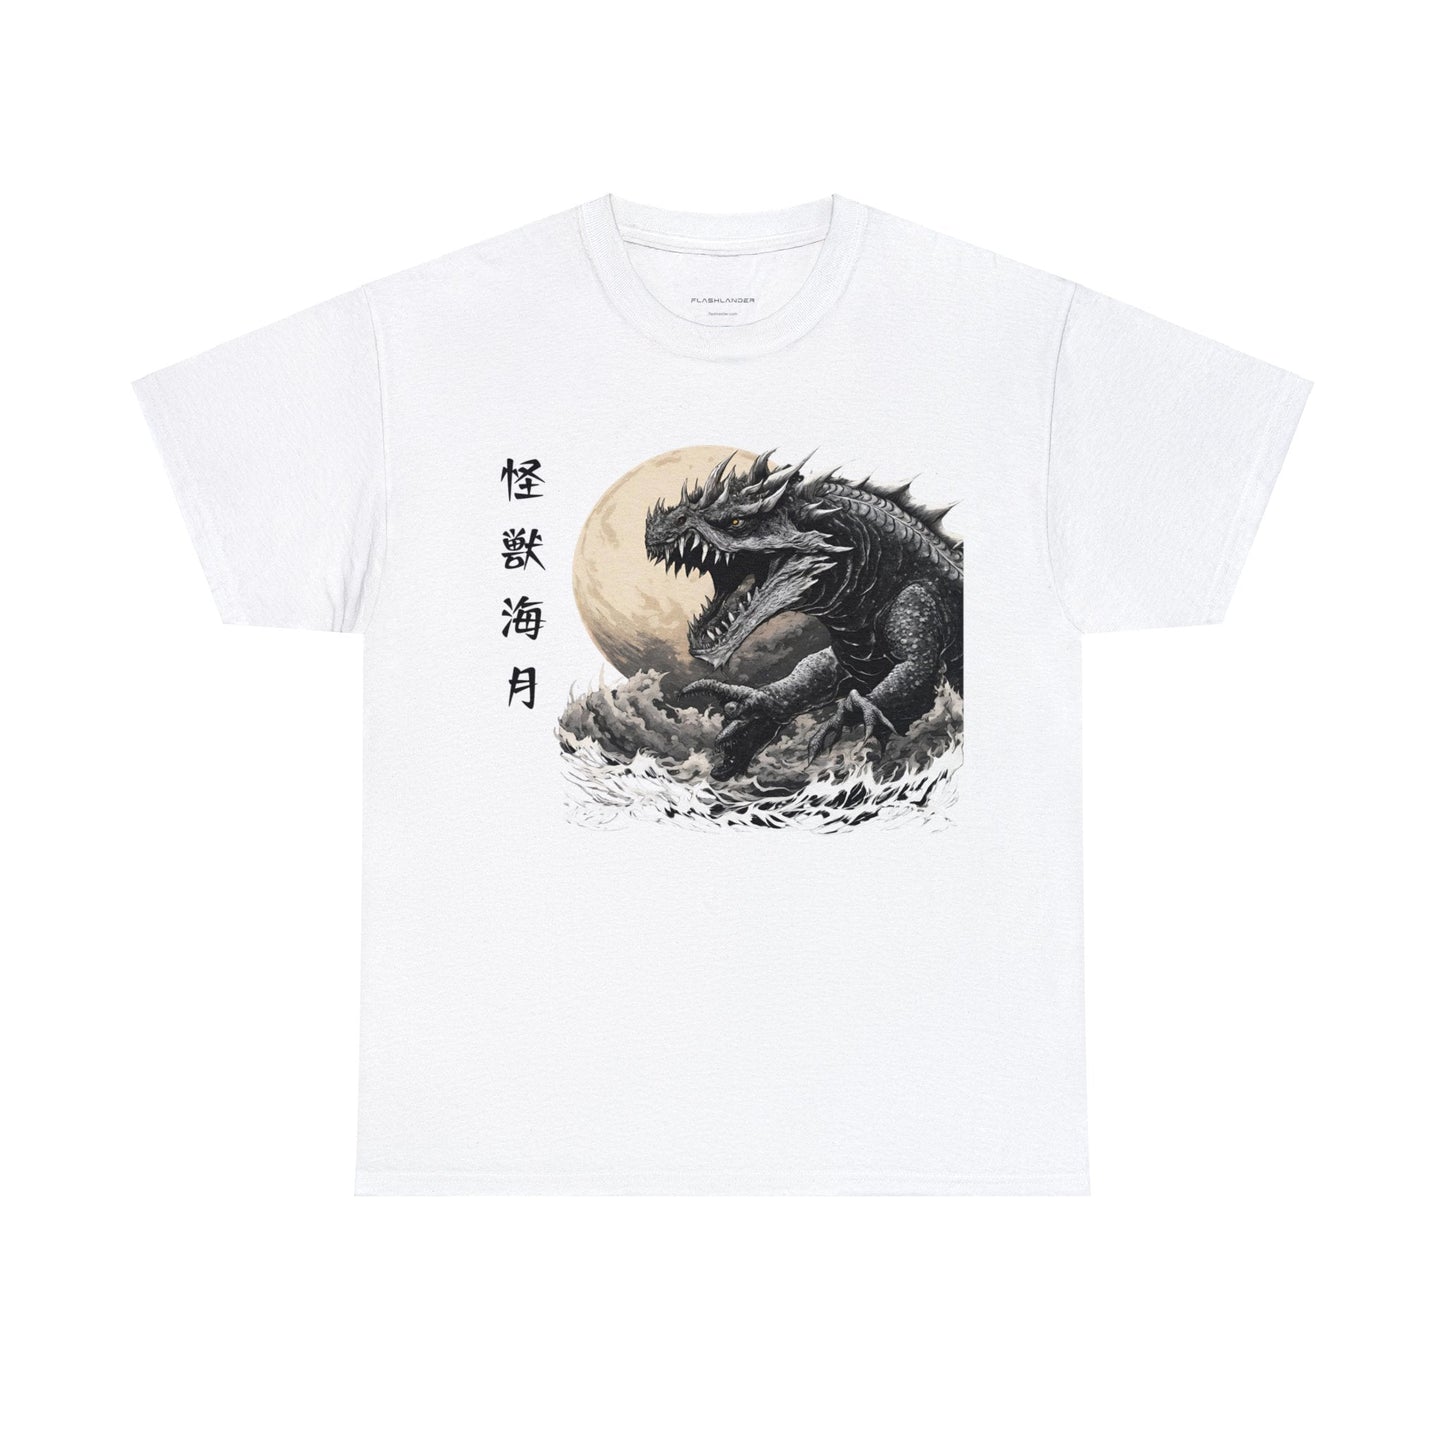 Kraken Sea Monster emerge camiseta de amenaza iluminada por la luna Flashlander